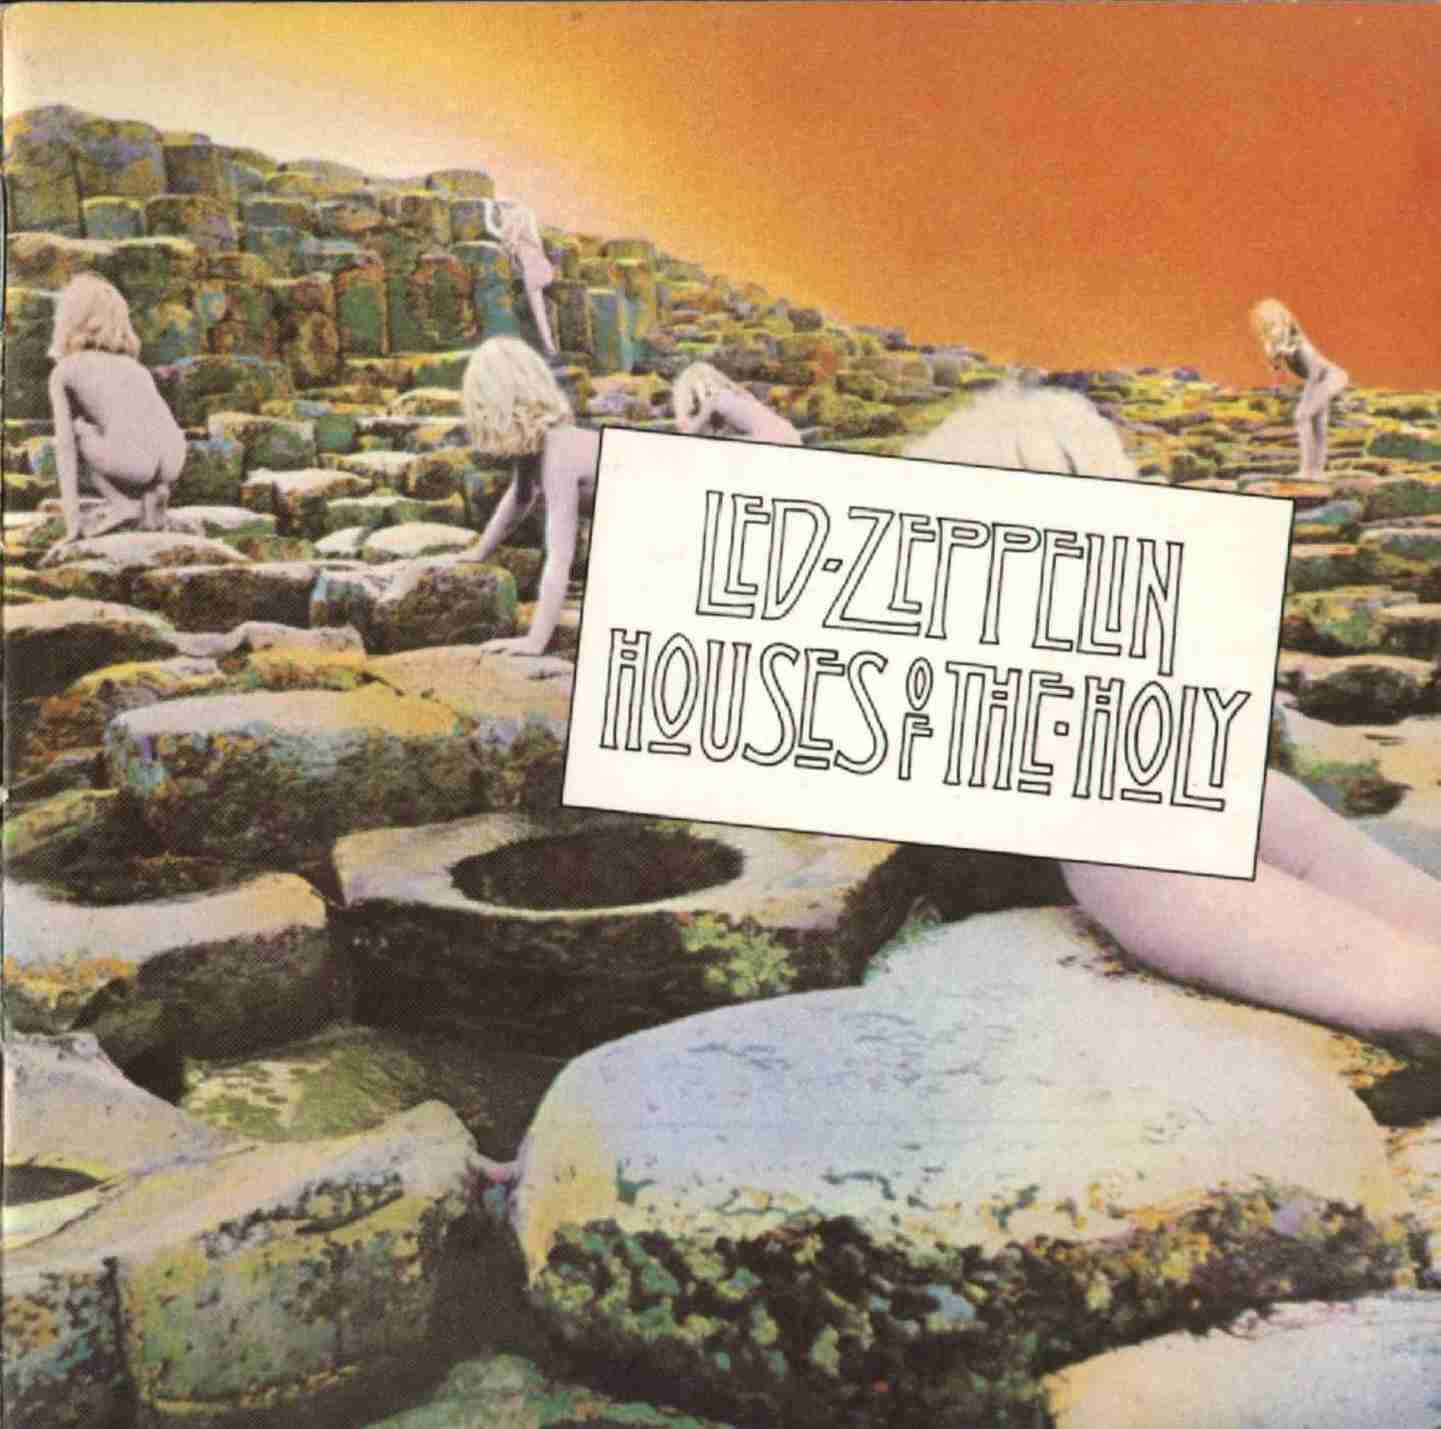 Led Zeppelin, ‘Houses of the Holy‘ (1973) - 11 millió<br /><br />A Zep konkrétan négy, saját jogon kiérdemelt albummal szerepel ezen a listán, de valljuk be: nem is csoda, rocktörténeti alapvetésekről van szó. A 2-300 milliós világszerte eladott mennyiségből a Houses Of The Holy egymaga csak az USÁ-ban 11 milliót szeletelt ki, ami megmutatja, hogy öt album után is képesek voltak még veretes slágereket írni.